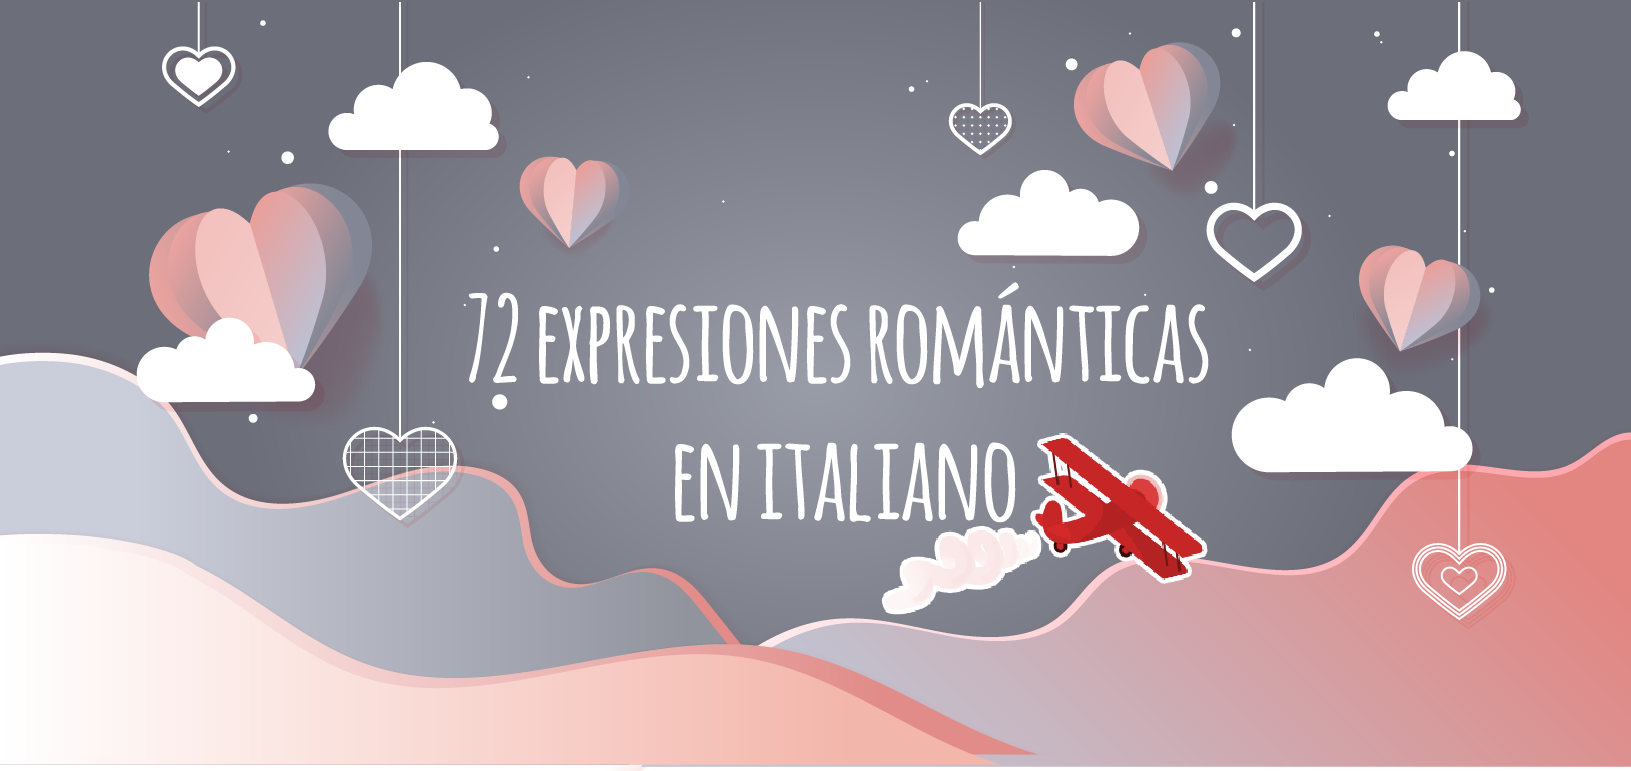 72 expresiones y vocabulario romántico en italiano 